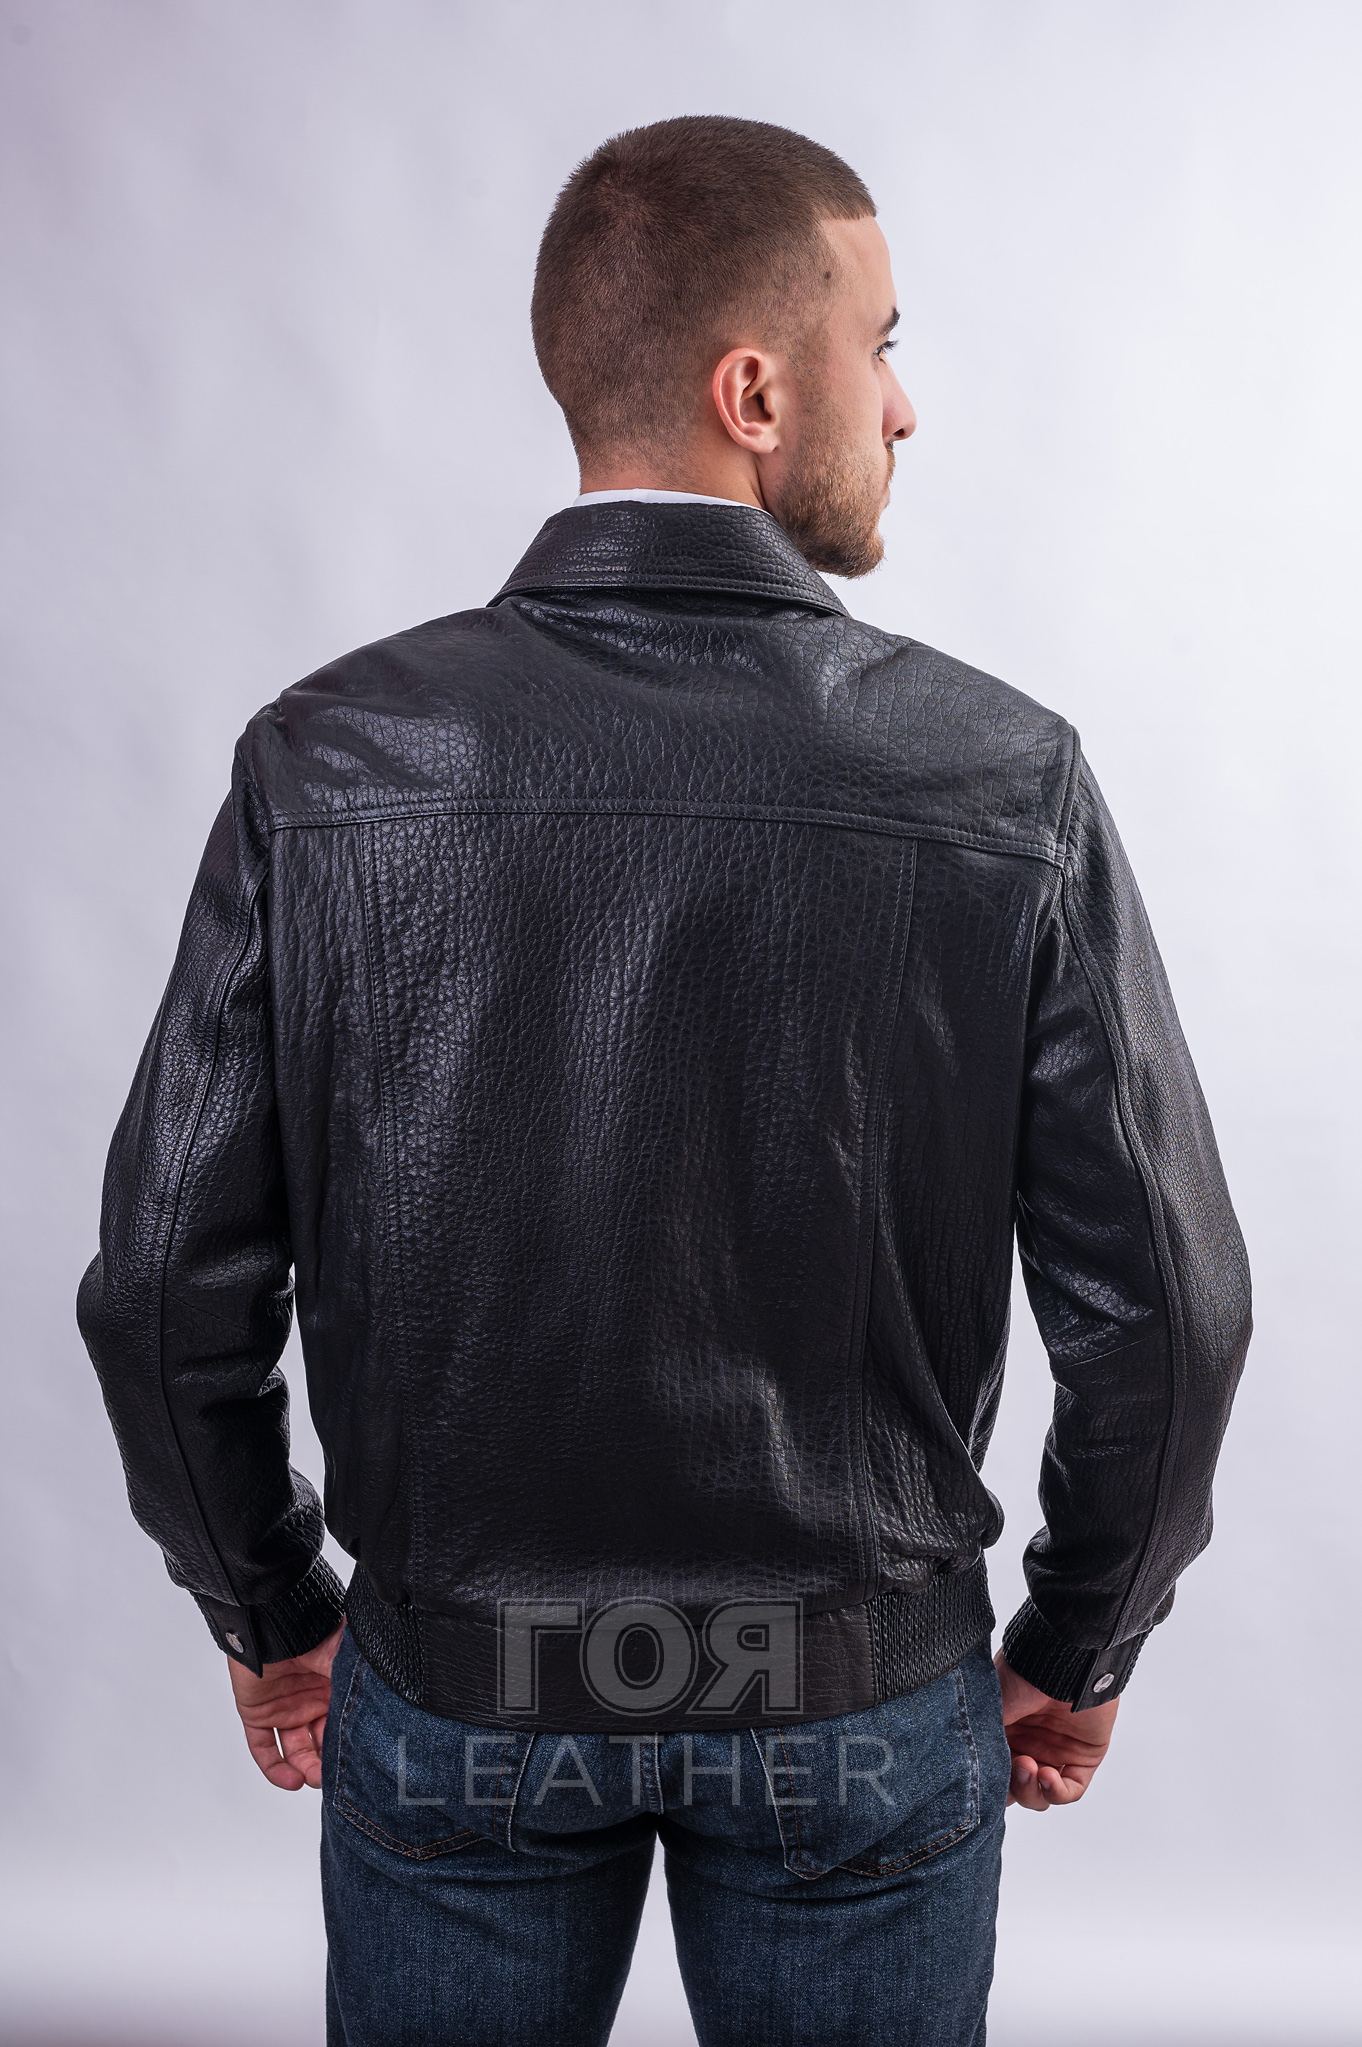 Мъжкото яке от естествена агнешка кожа в черен цвят VK- E 290 ще ви помогне да създадете своя ненадминат уникален стил. Един от най-популярните модели мъжки якета от естествена кожа. Подобни модели с различни дизайнерски опции са включени във всяка нова колекция. Късо кожено яке в стил бомбър. Кожен ластик на ханша  и маншетите. Затваряне с цип. В предната част има традиционни джобове с капак. Два джоба от вътрешната част Много удобен, атрактивен модел е ушит от висококачествена естествена агнешка кожа. Тя е мека и еластична, има характерен релеф и блясък. Издръжлива, без мирис, лесна за почистване. . Яката тип риза внася класика и собствена „жизненост“ във визията. Но при ветровито време може да се повдигне за по-голям комфорт.